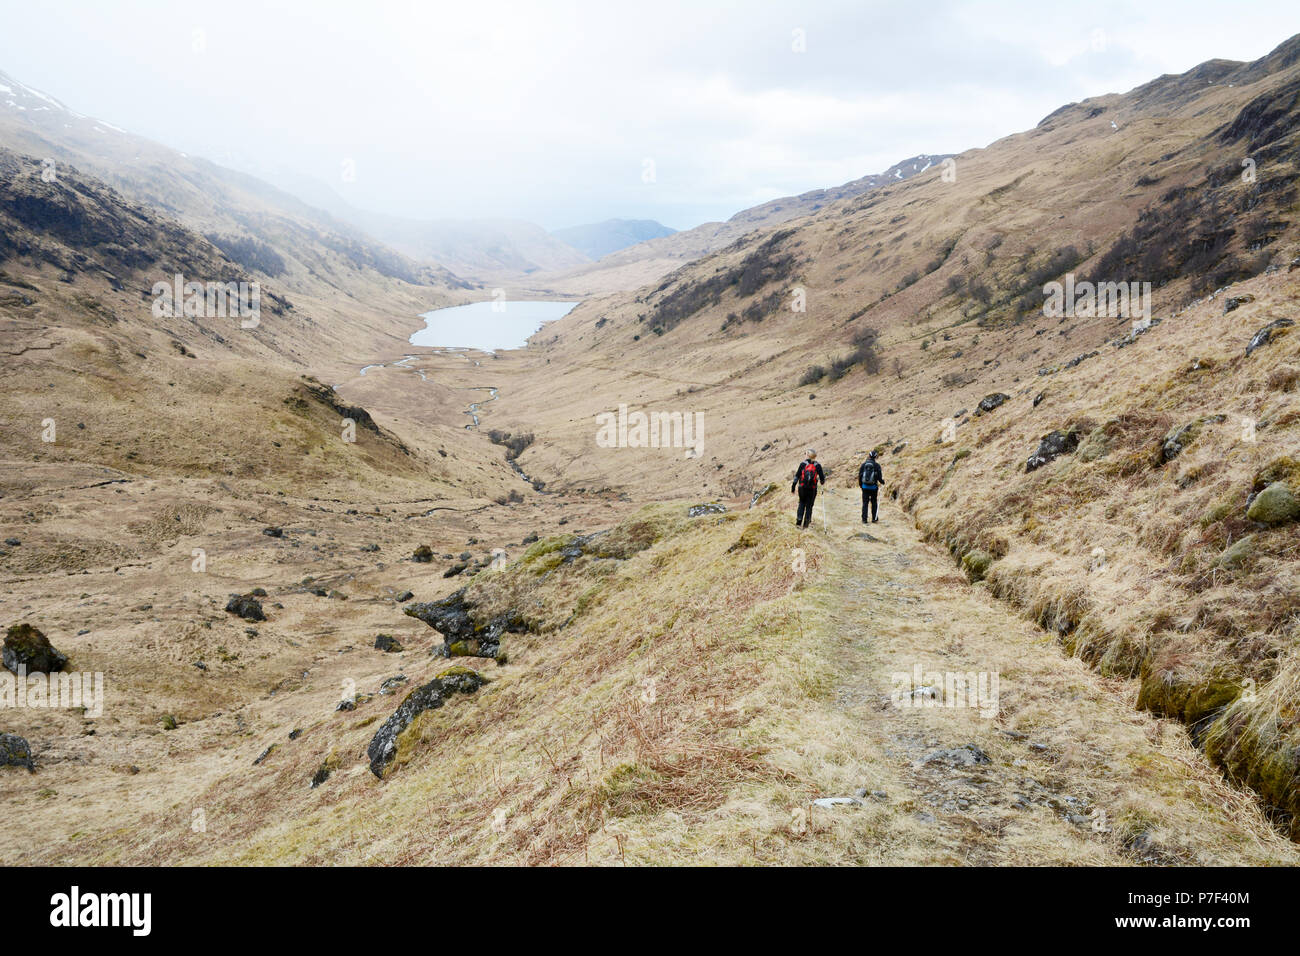 Deux Randonneurs marchant dans un sentier de la vallée d'un munro dans les Highlands écossais, Knoydart Peninsula, nord-ouest de l'Ecosse, Grande-Bretagne. Banque D'Images